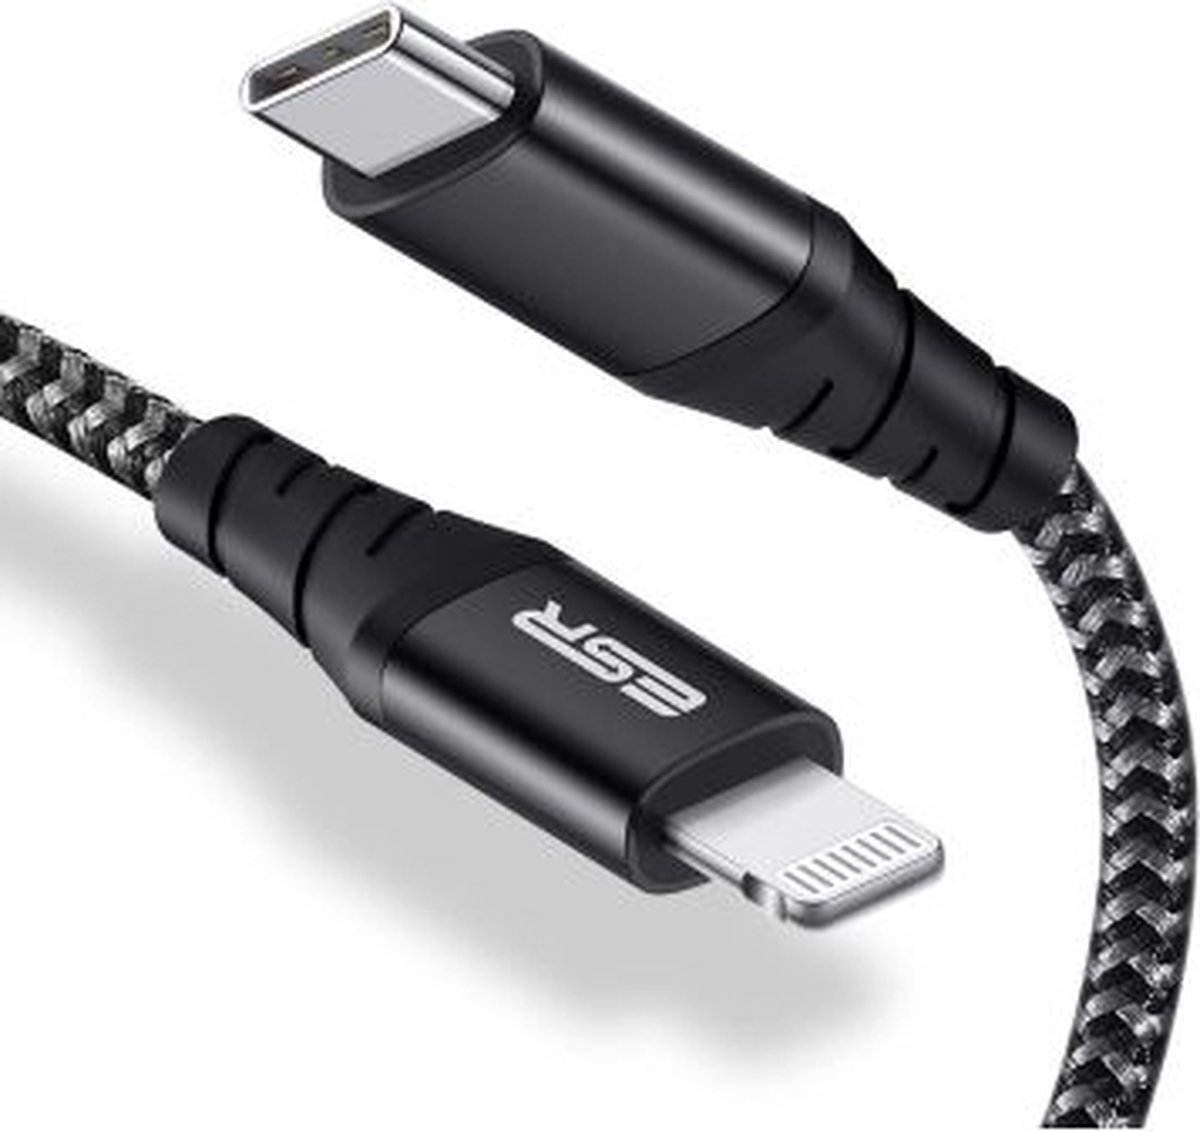 ESR iPhone kabel Zwart Gevlochten geschikt voor Apple iPhone 6,7,8,X,XS,XR,11,12,13,Mini,Pro Max - iPhone oplaadkabel - iPhone oplader kabel - Lightning naar USB Snellaad Kabel 1M Zwart - 120030